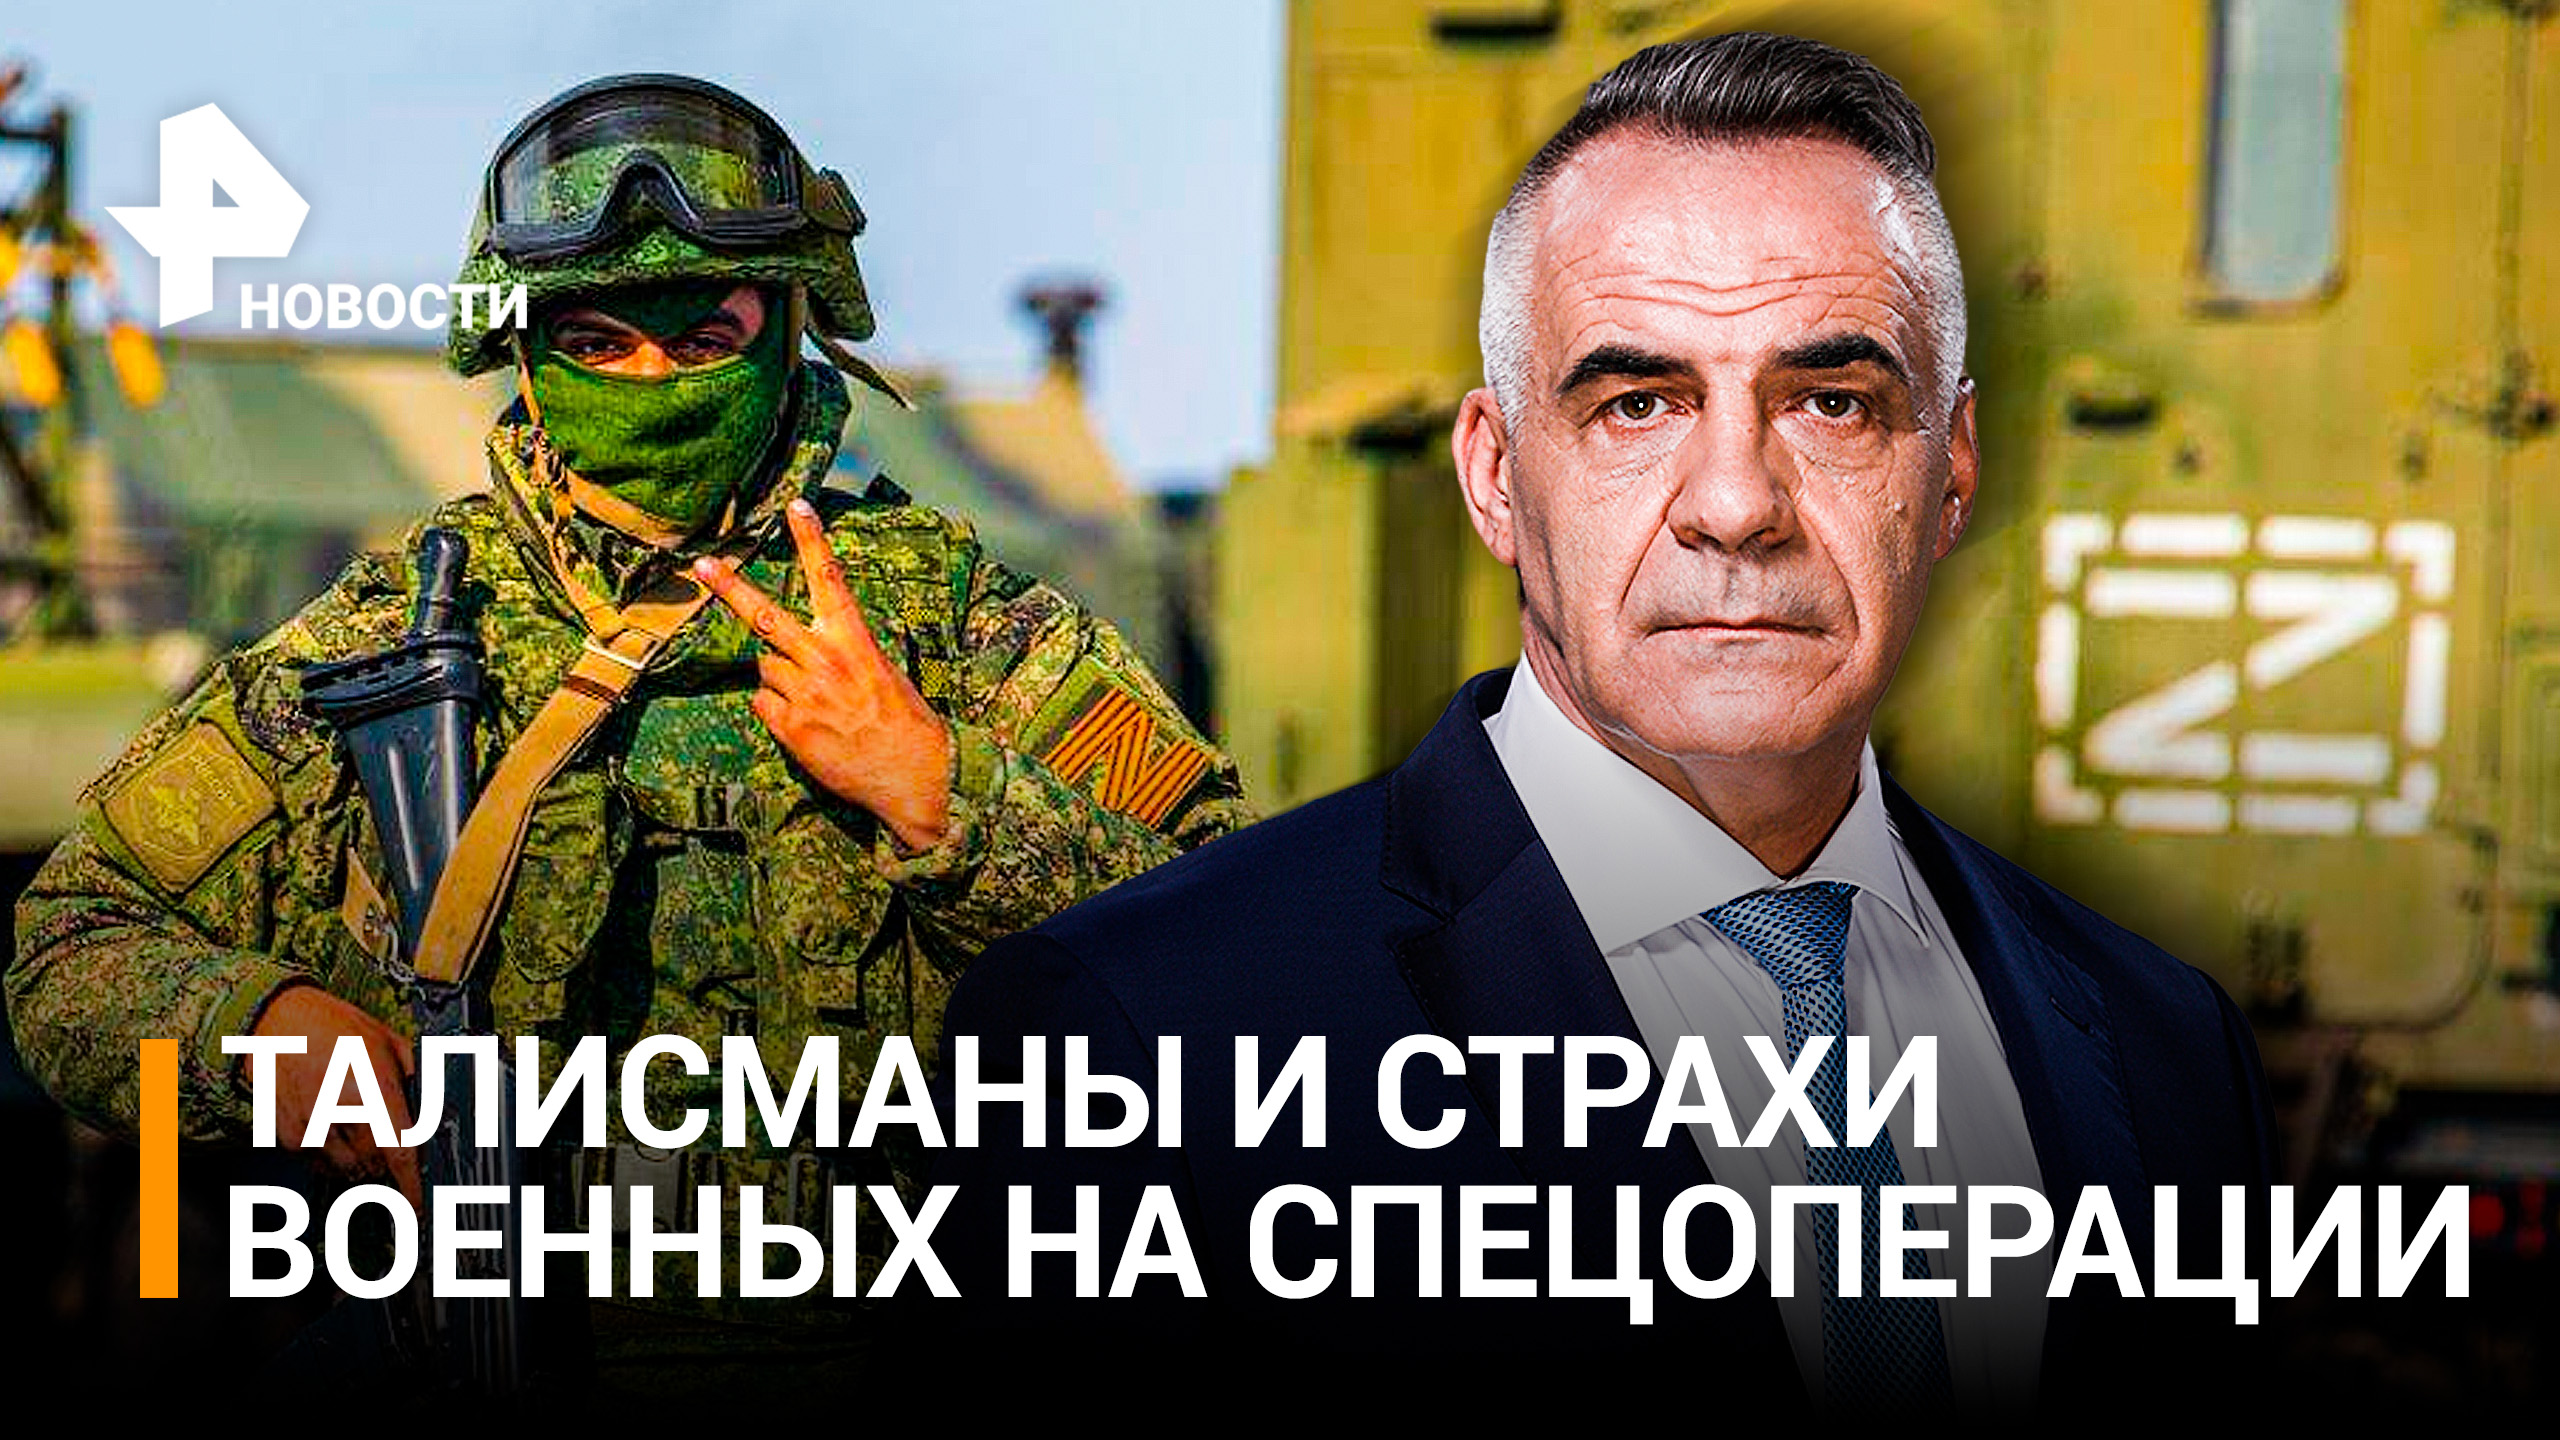 Российские военные рассказали, что им помогает в спецоперации / ИТОГИ НЕДЕЛИ с Петром Марченко